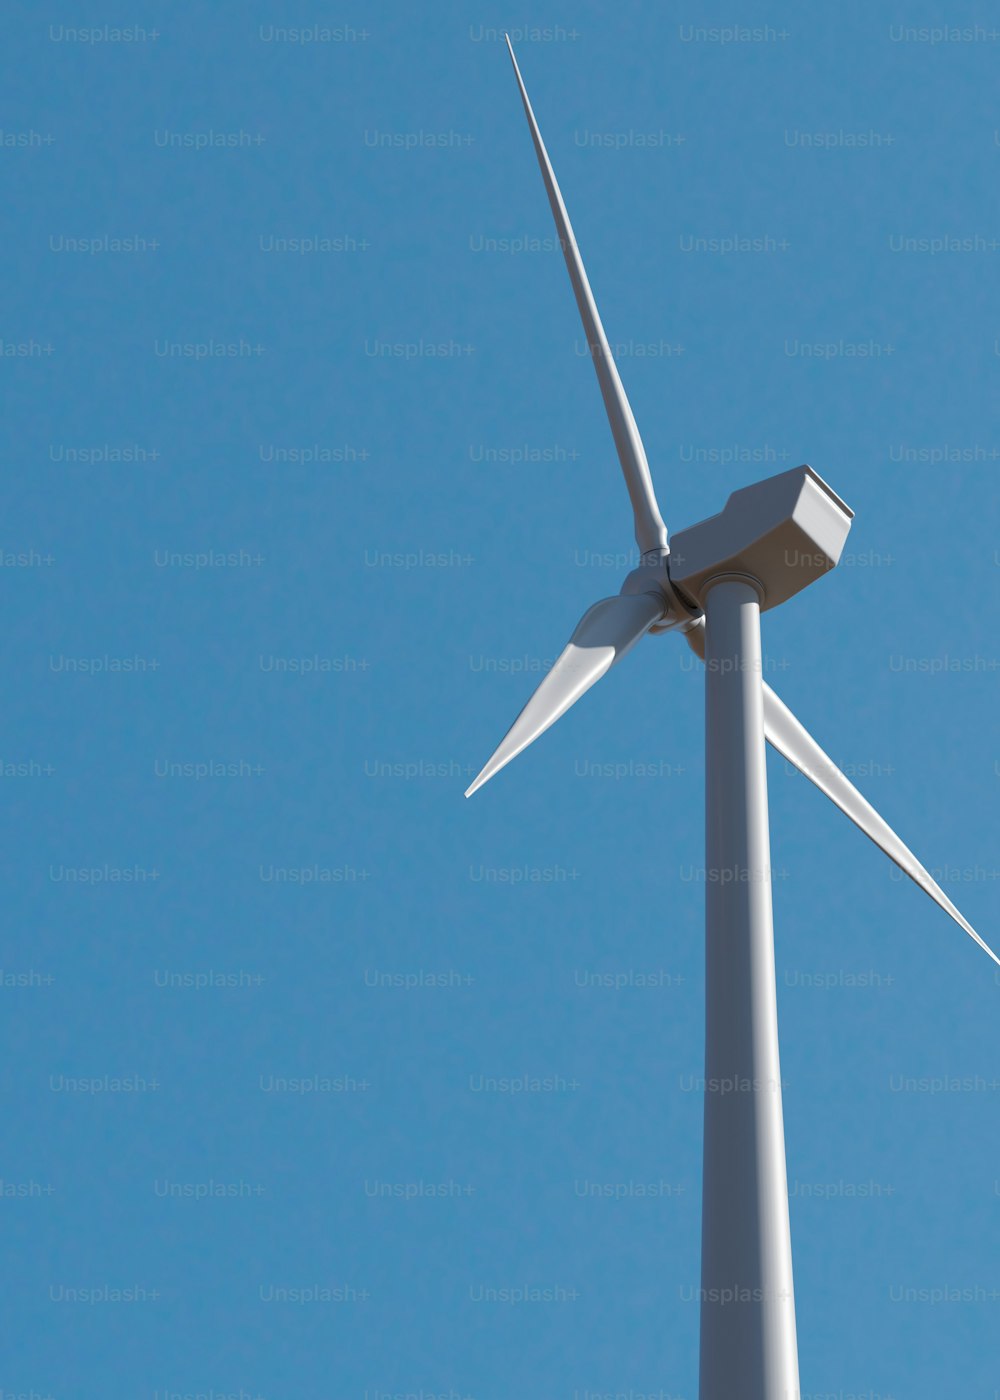 Una turbina eolica viene mostrata contro un cielo blu